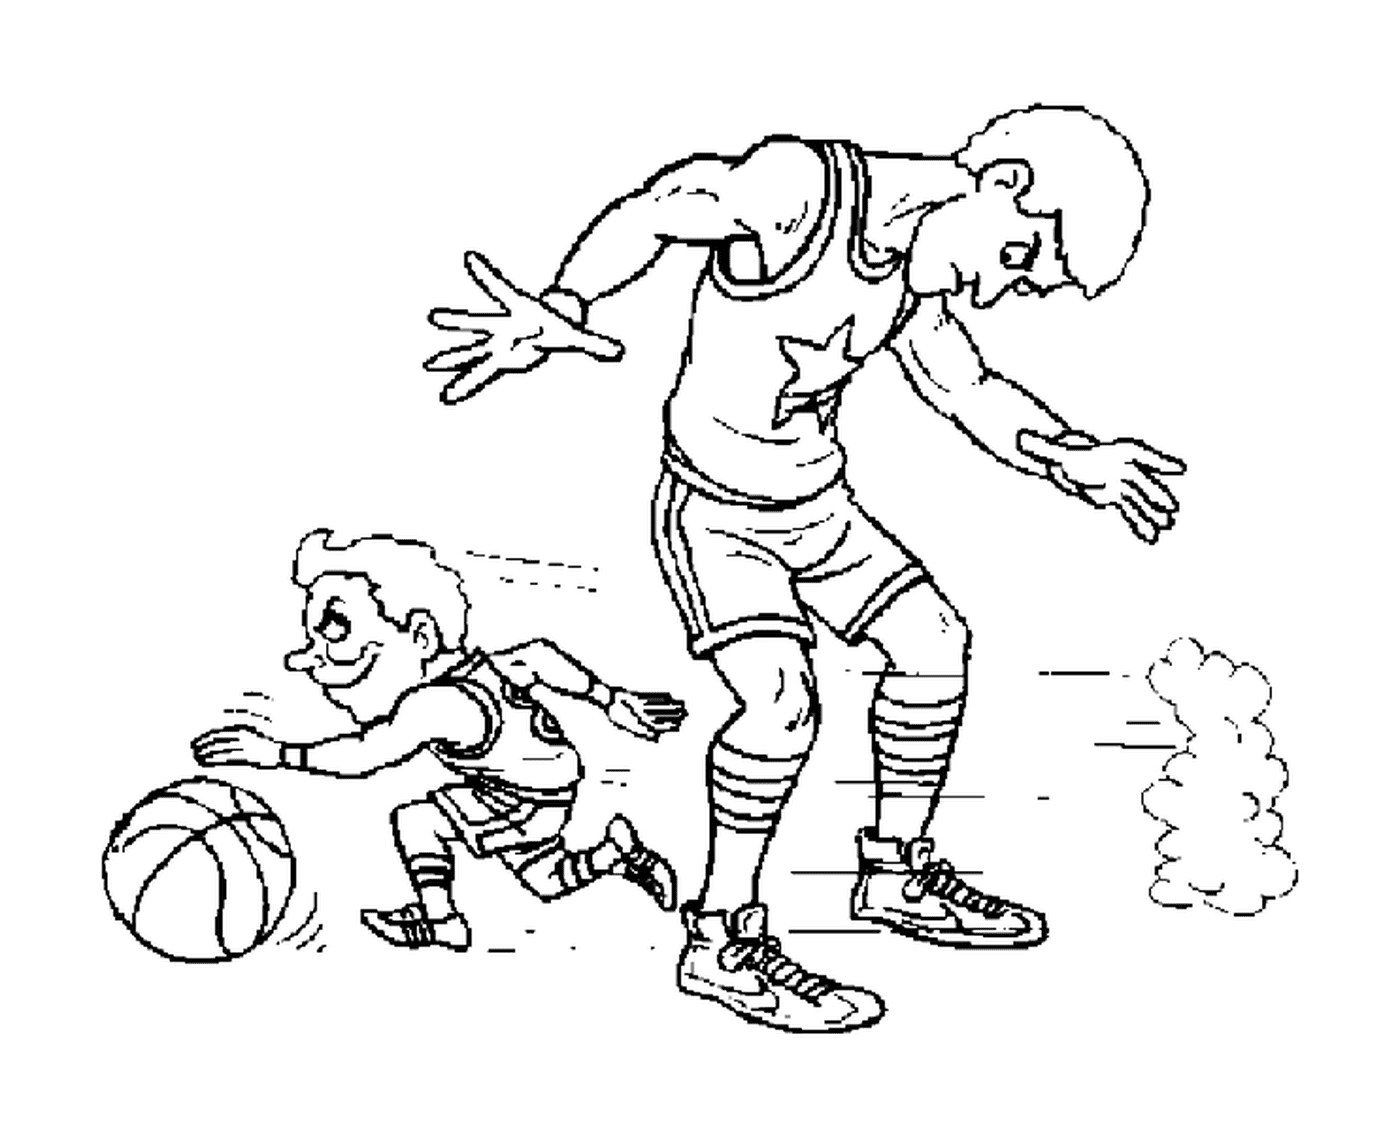  Um pequeno jogador passa sob as pernas de outro jogador 